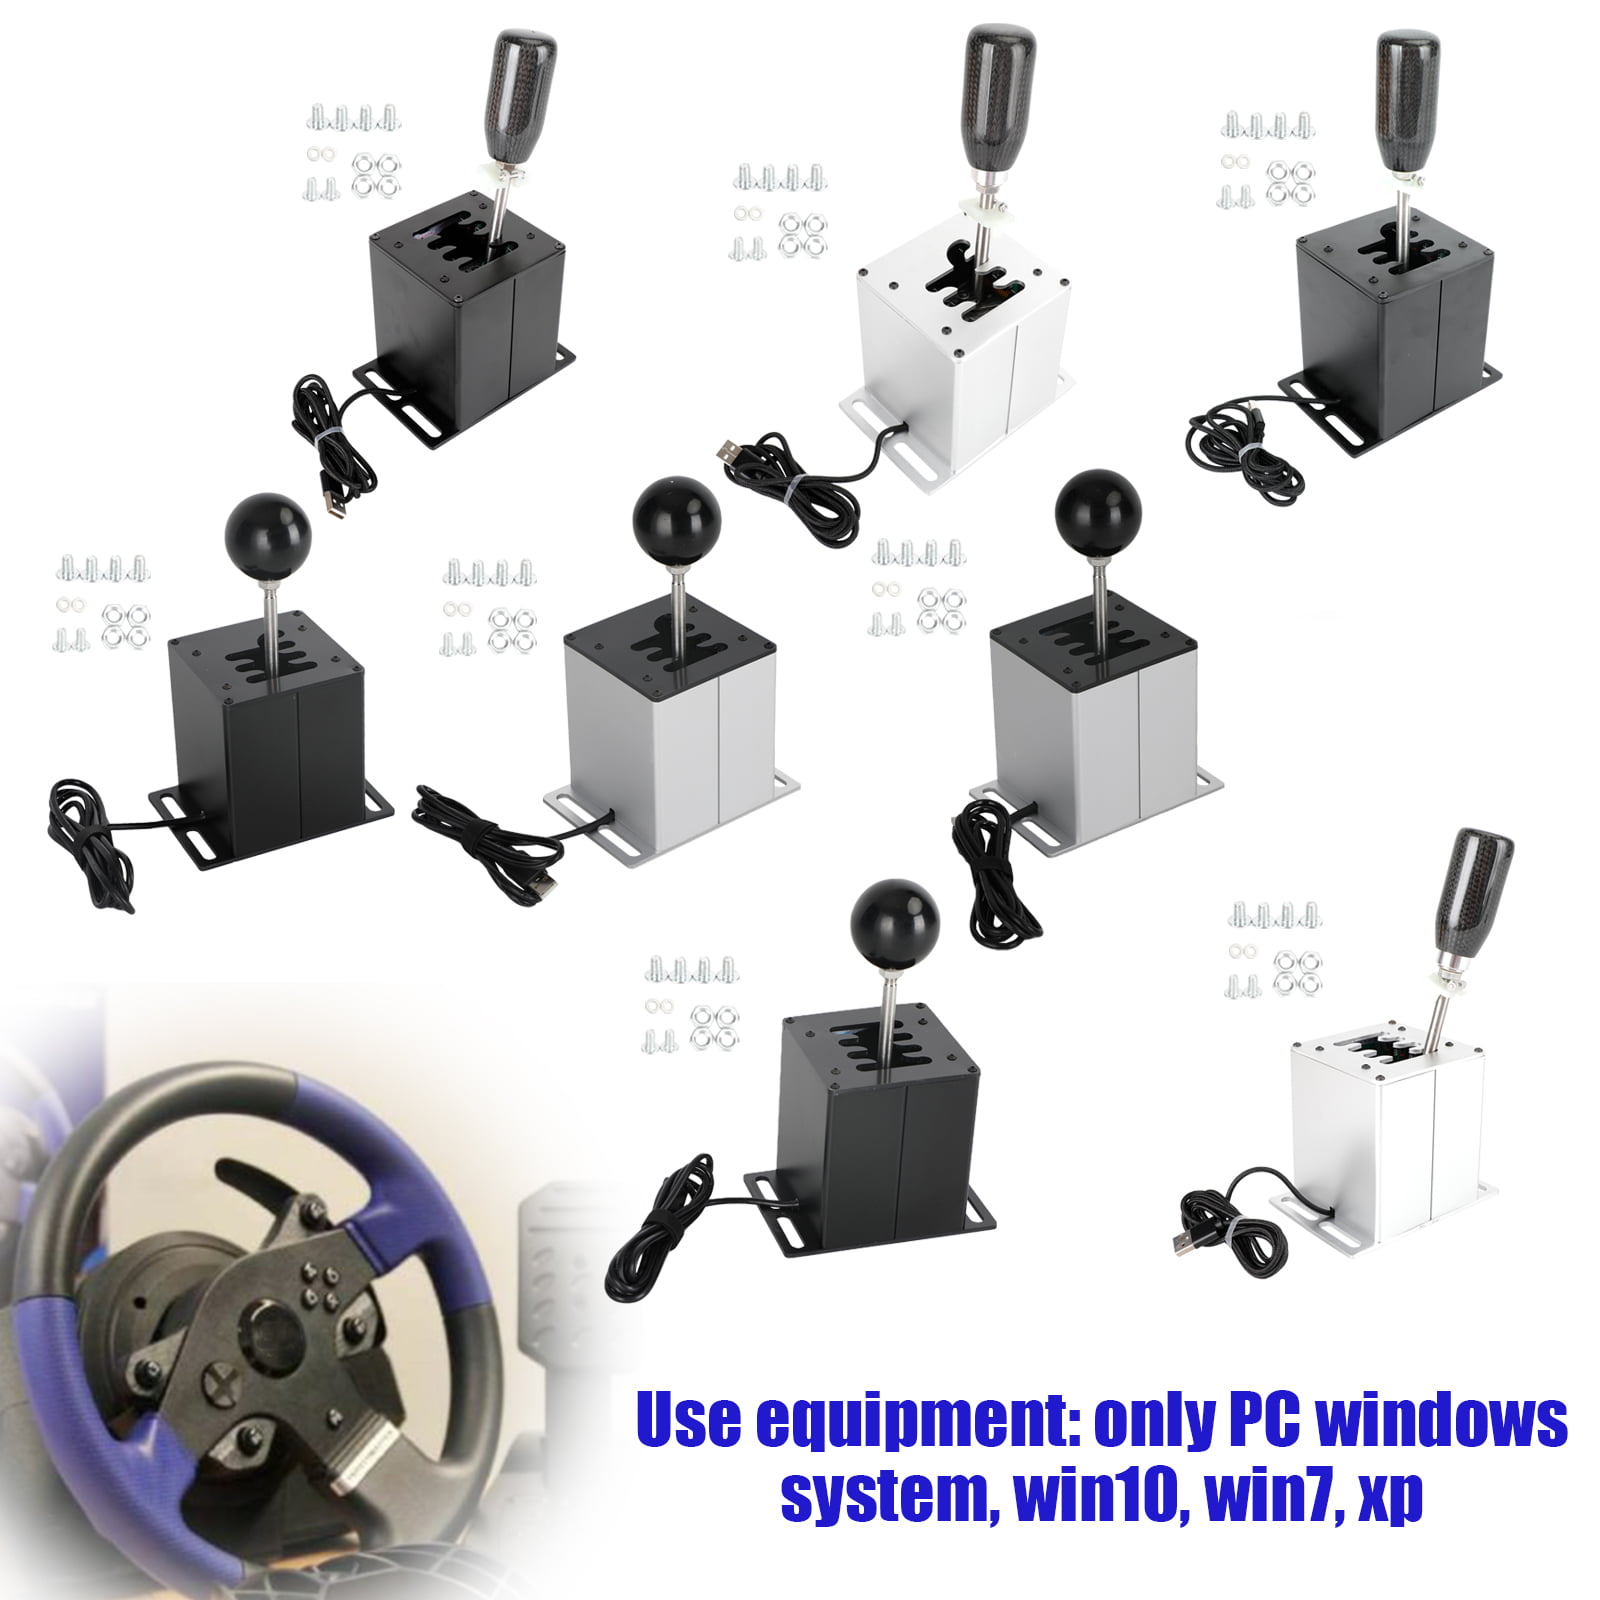 udvikling af Sentimental Niende 6+R 7+R USB Simulator H Gear shifter for Logitech G29 G27 G25 Steering  Wheel PC - Walmart.com